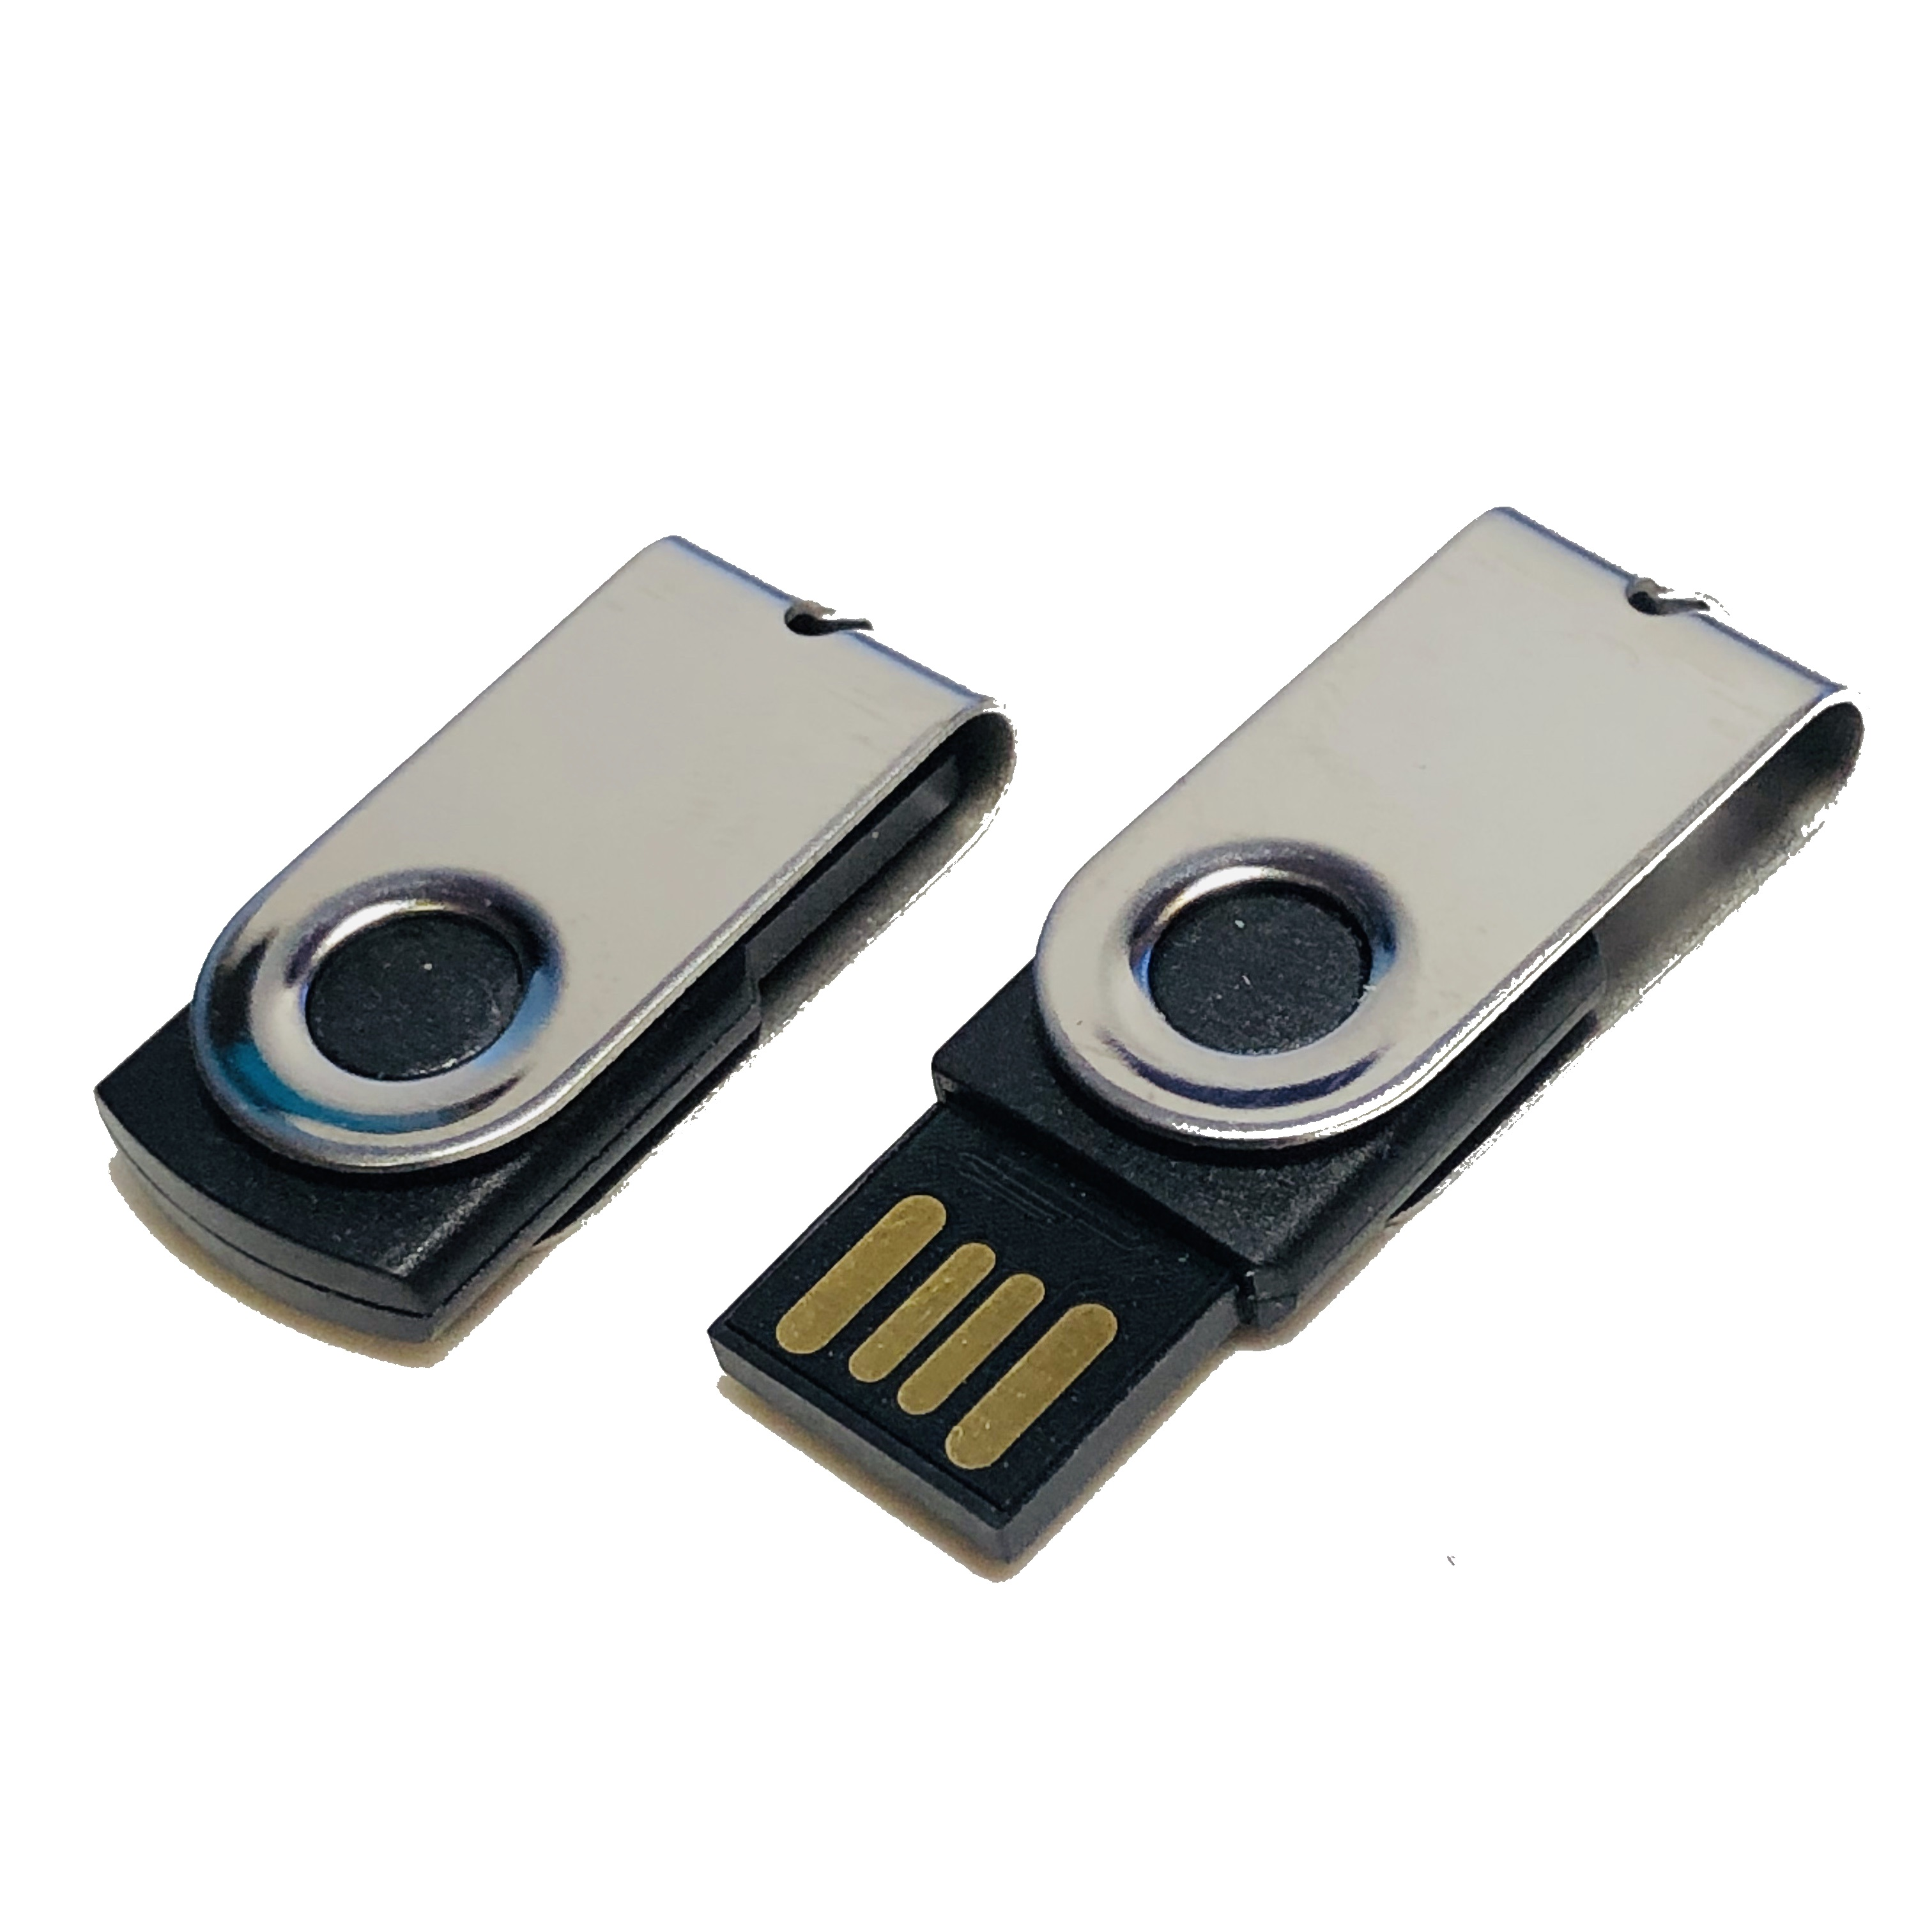 ® GB) USB-Stick 2 USB MINI-SWIVEL (Schwarz-Chrome, GERMANY